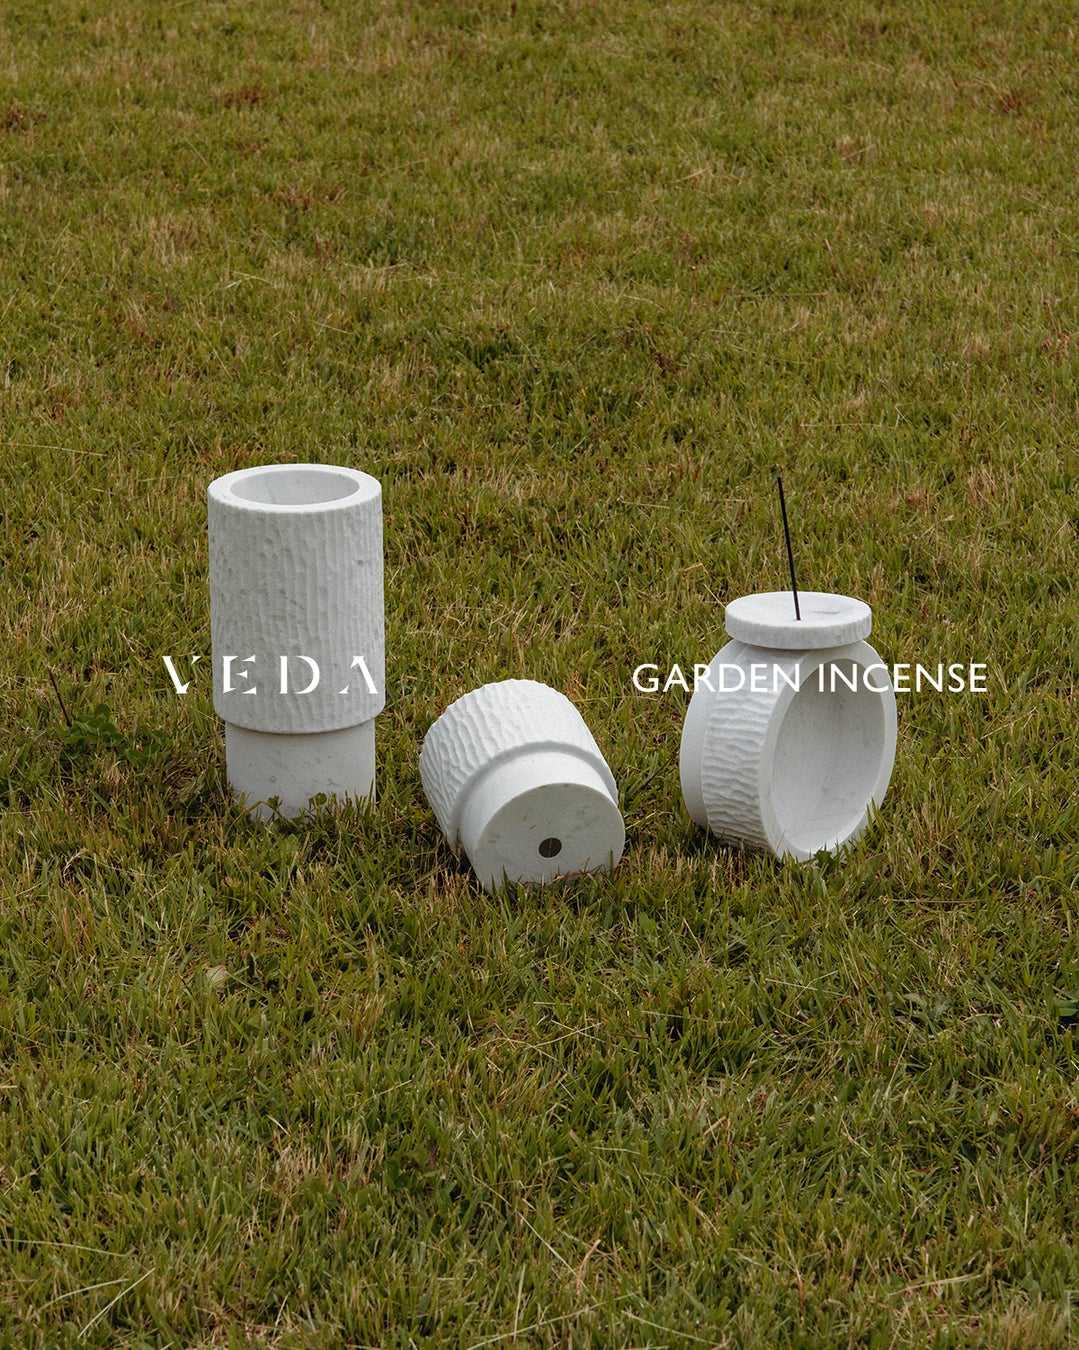 【 VEDA（ヴェーダ）】から新作となる「GARDEN INCENSE COLLECTION（ガーデン インセンス コレクション）」が発売